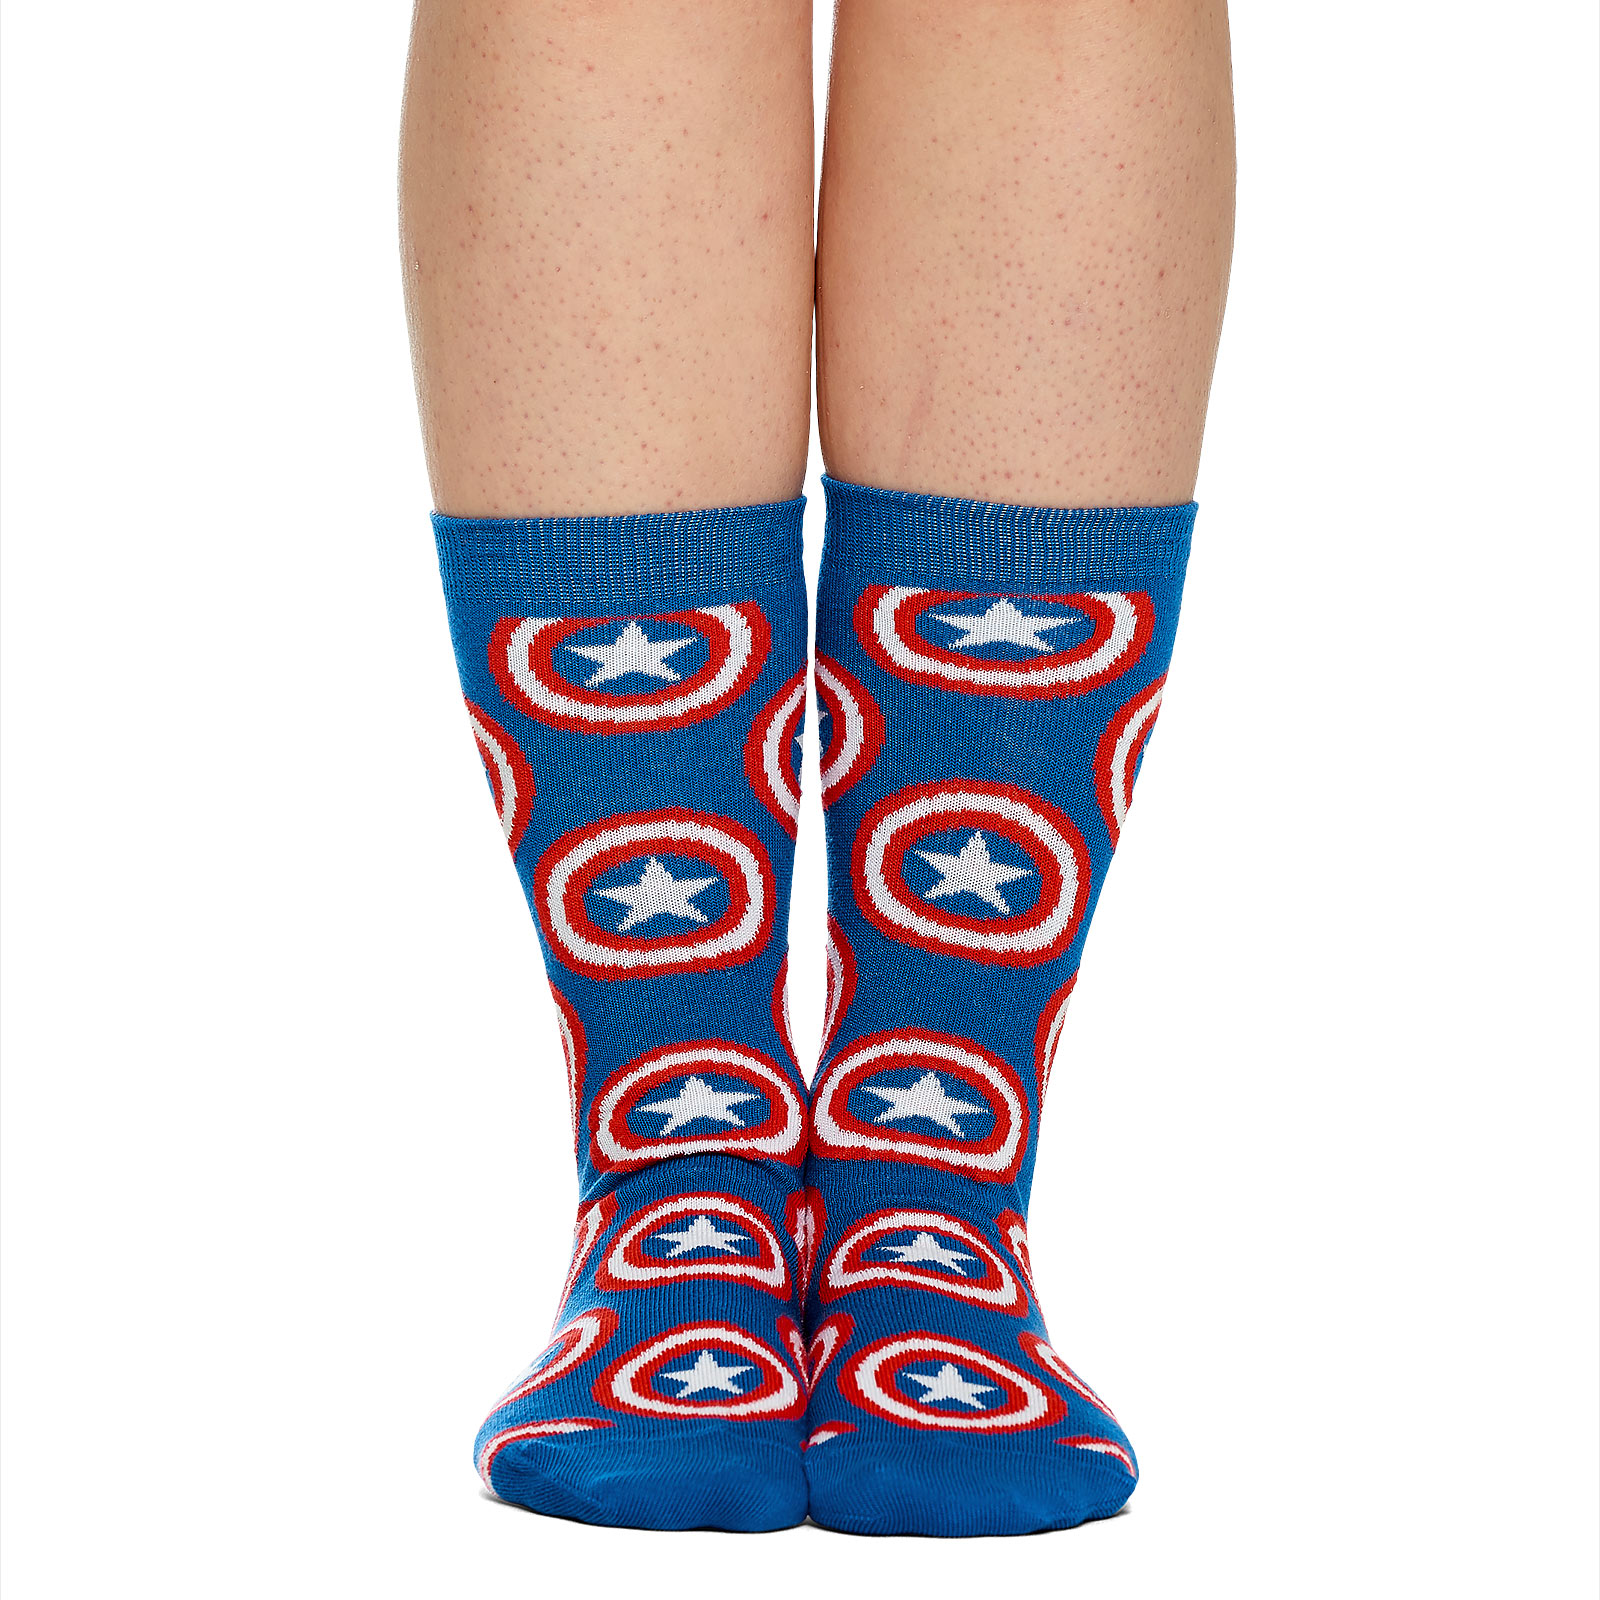 Captain America - Shield Logo Socks 2 Pair Set